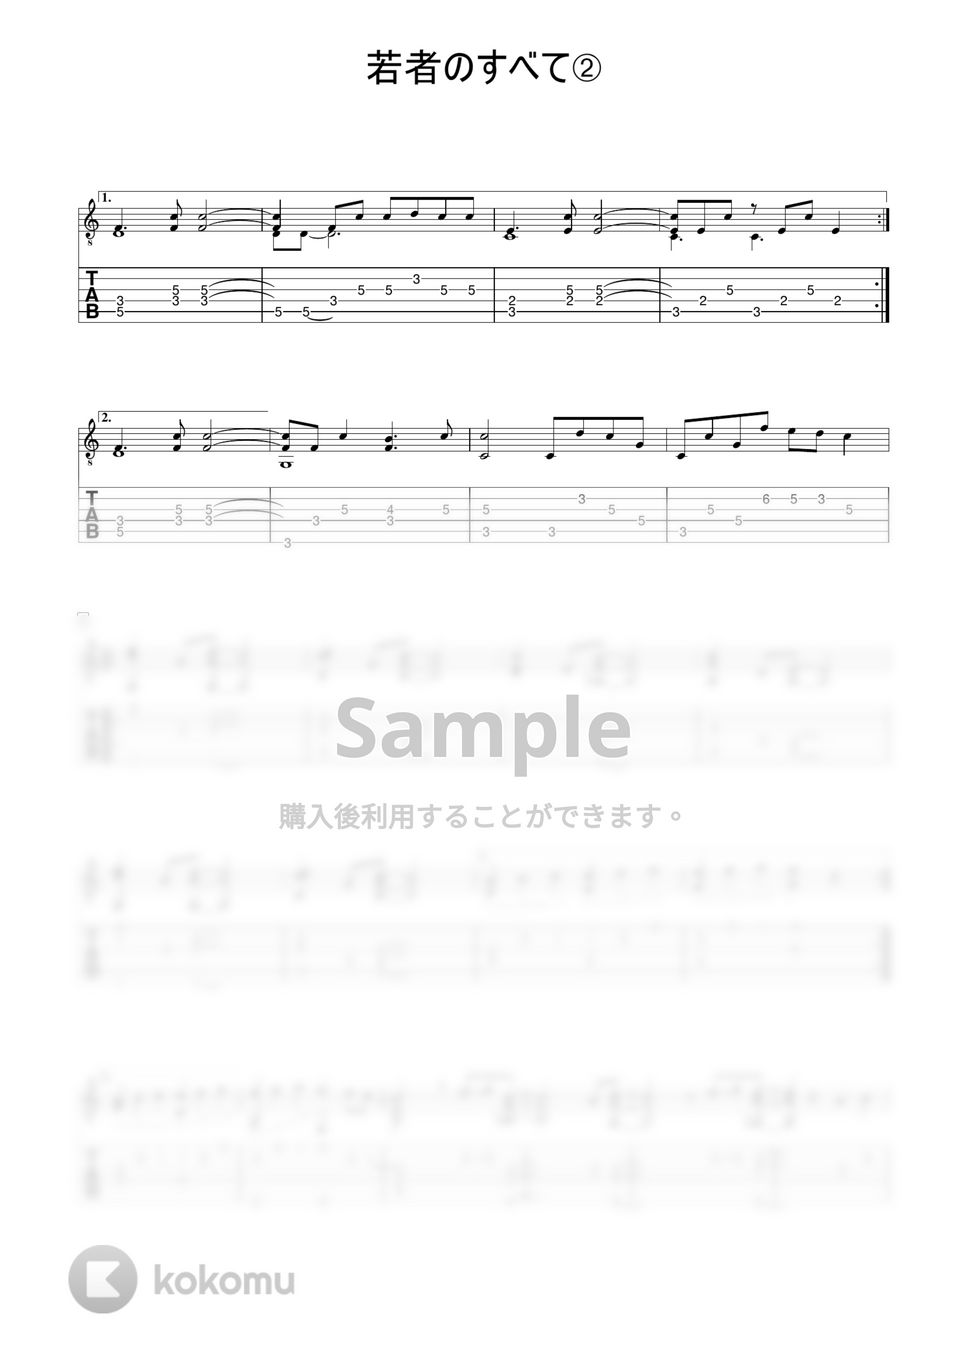 フジファブリック - 若者のすべて (ソロギターアレンジ) by 早乙女浩司